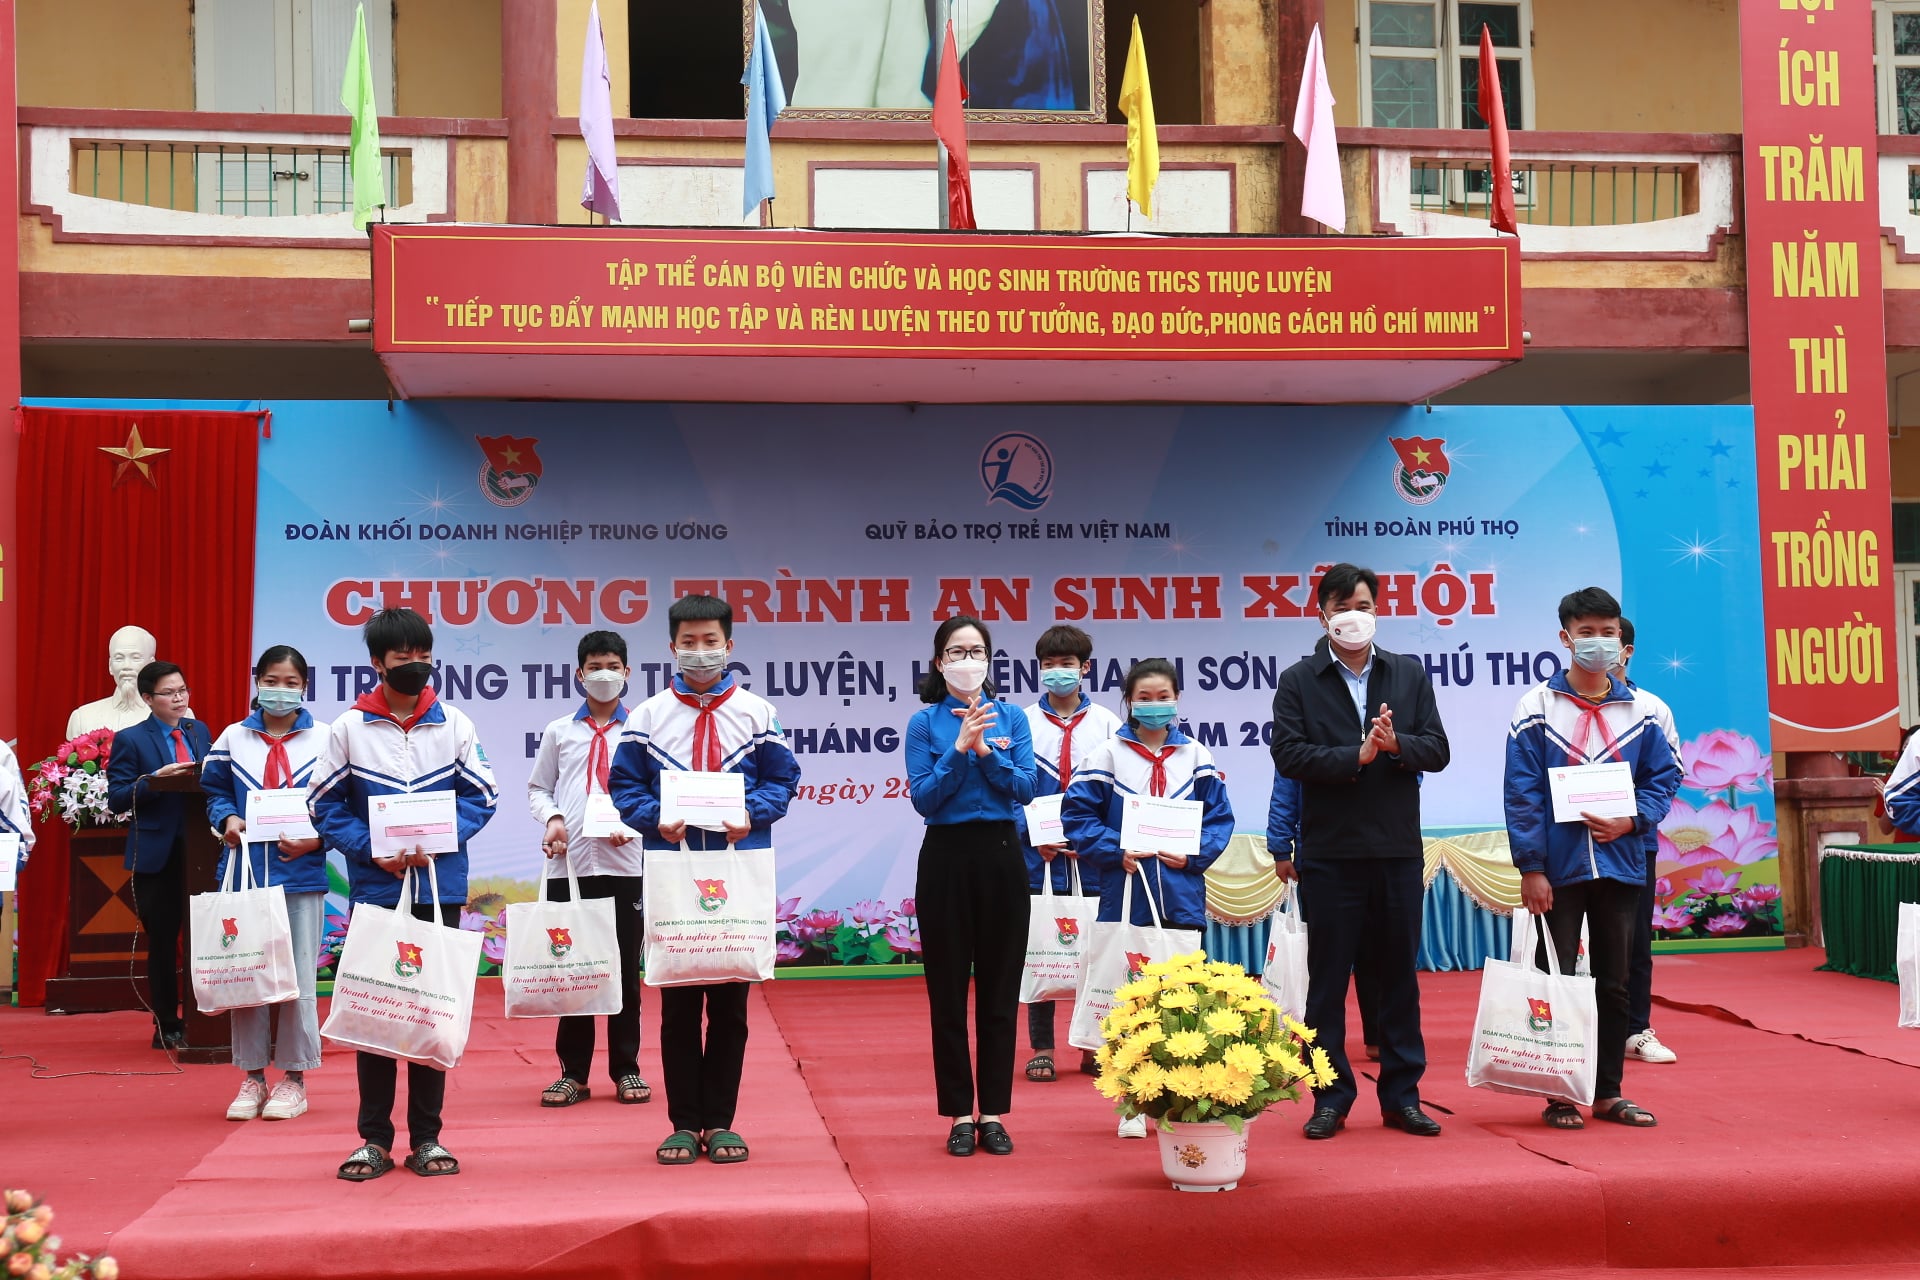 Đồng chí Hoàng Thị Minh Thu, Bí thư Đoàn Khối DNTW tặng quà, hỗ trợ kinh phí đỡ đầu “Gieo mầm yêu thương” cho 28 em học sinh nghèo vượt khó của nhà trường.